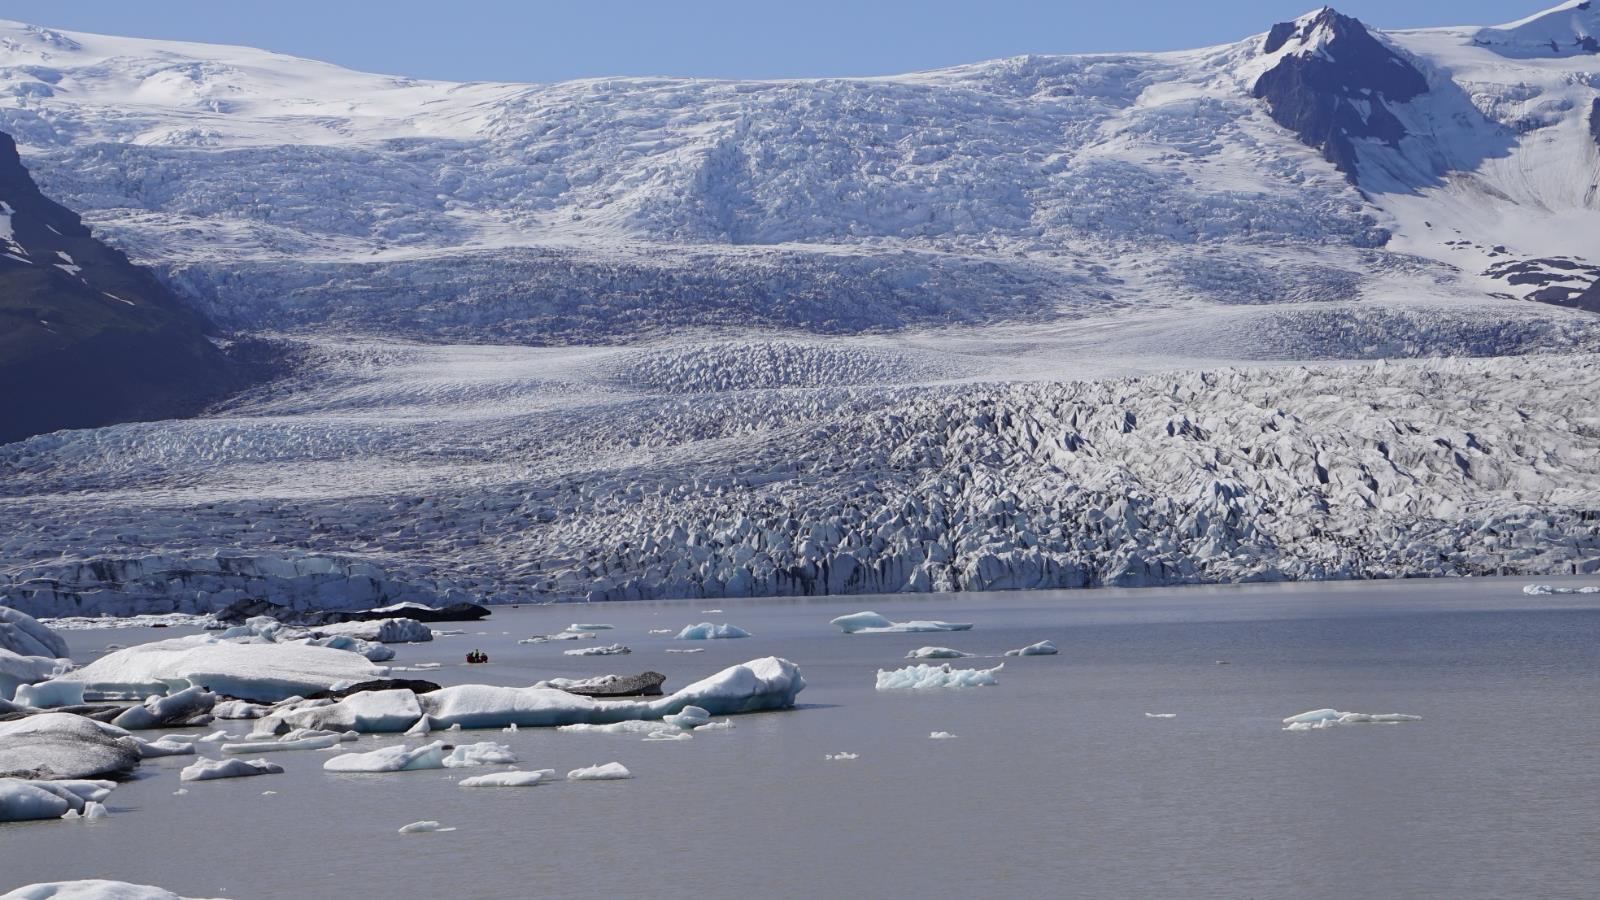 تمتد جزيرة غرينلاند على مساحة شاسعة تعادل 7 أضعاف مساحة المملكة المتحدة (بيكسلز)